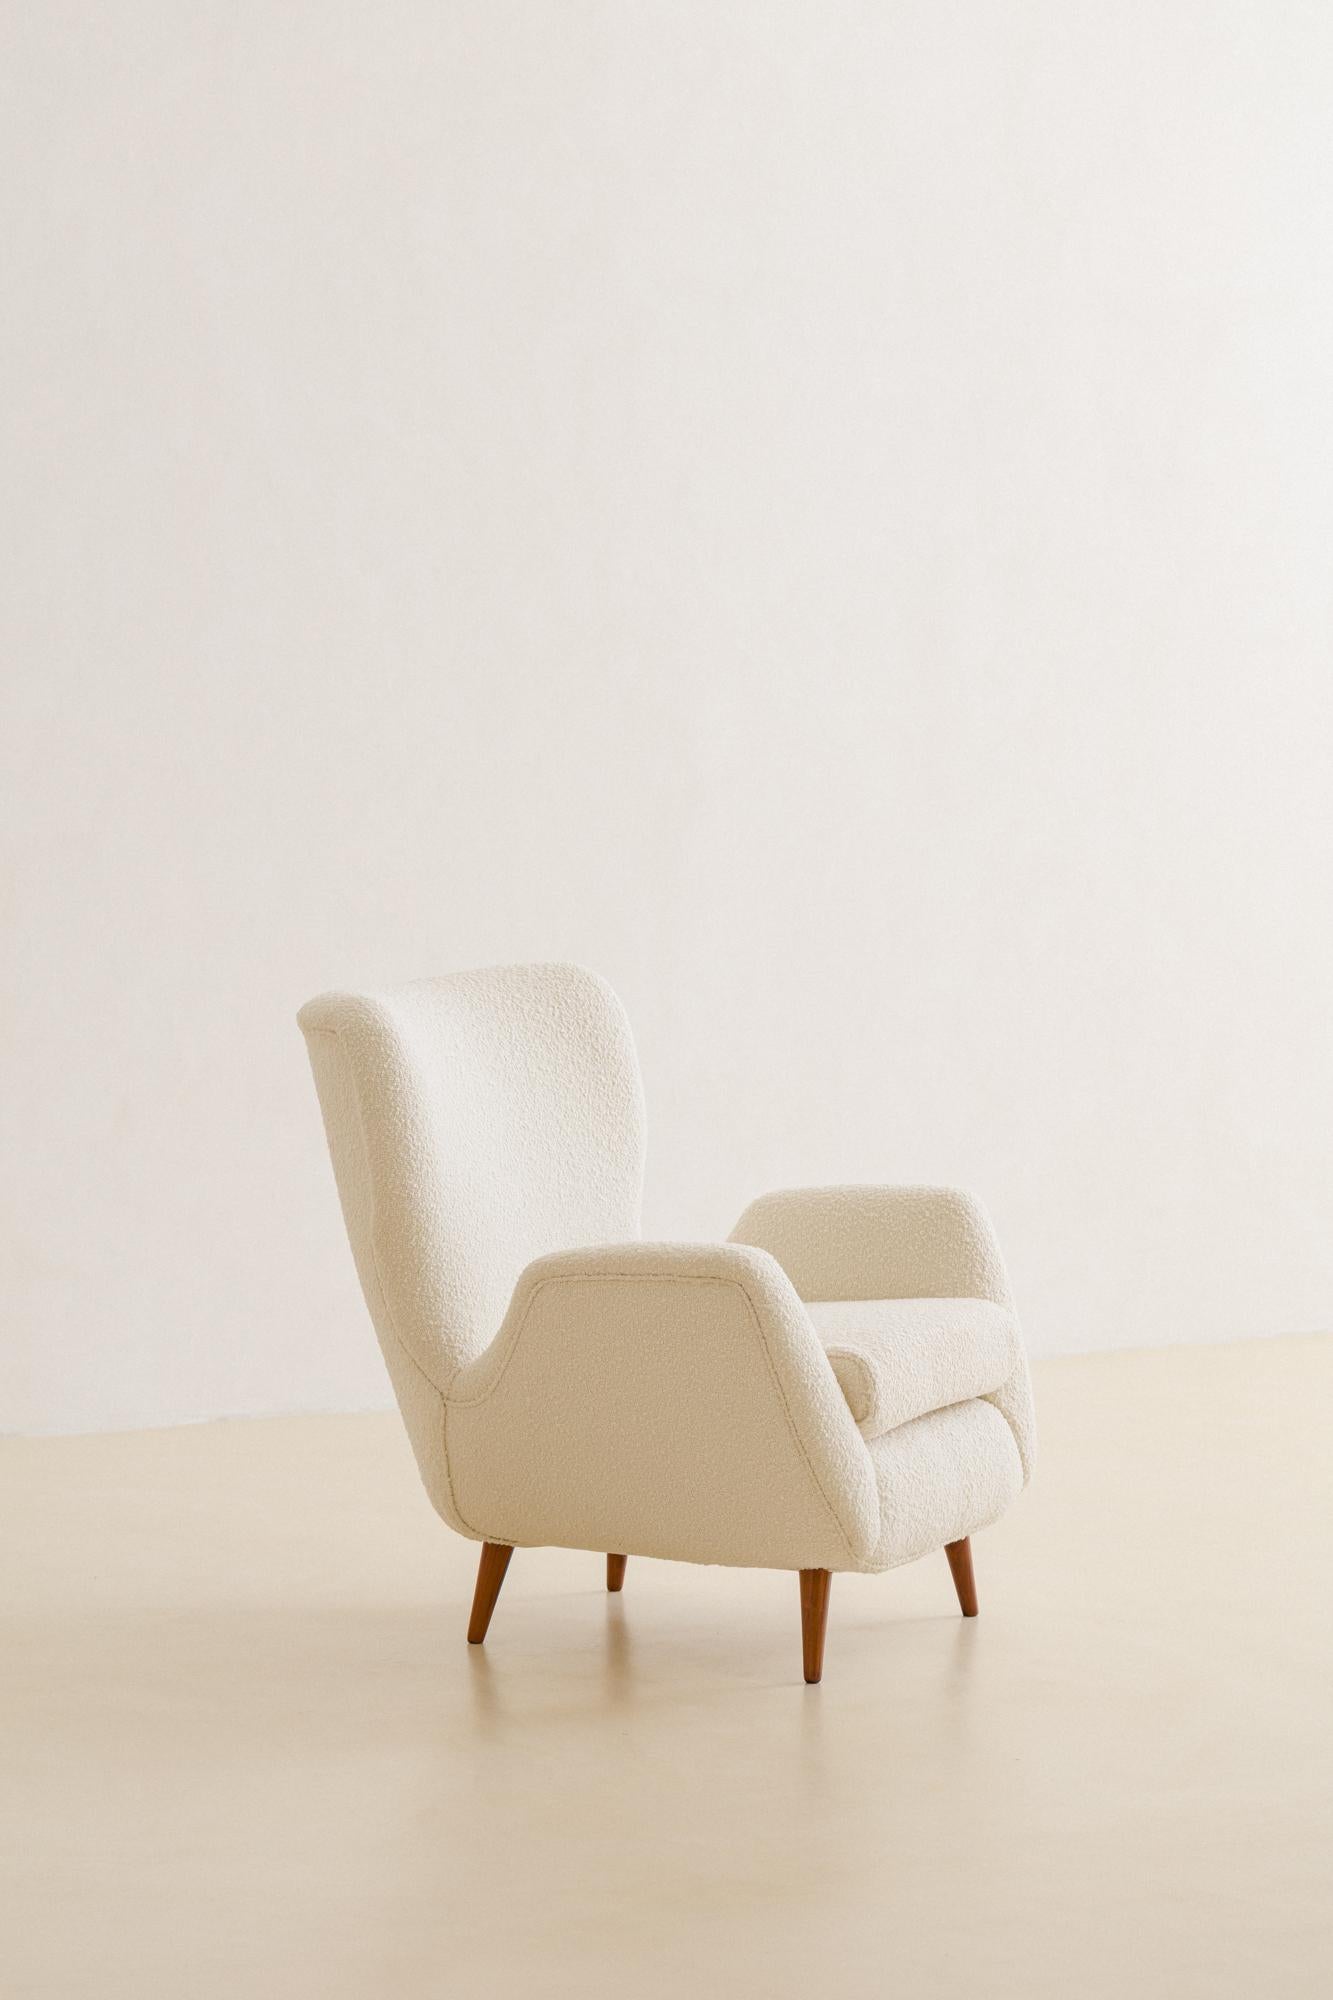 Ce fauteuil confortable a été conçu par Martin Eisler (1913-1977) en 1955 et fabriqué par Forma S.A. Móveis e Objetos de Arte. Sa structure est composée de bois massif, soutenue par des pieds pointus en bois de rose. Les dossiers et les accoudoirs